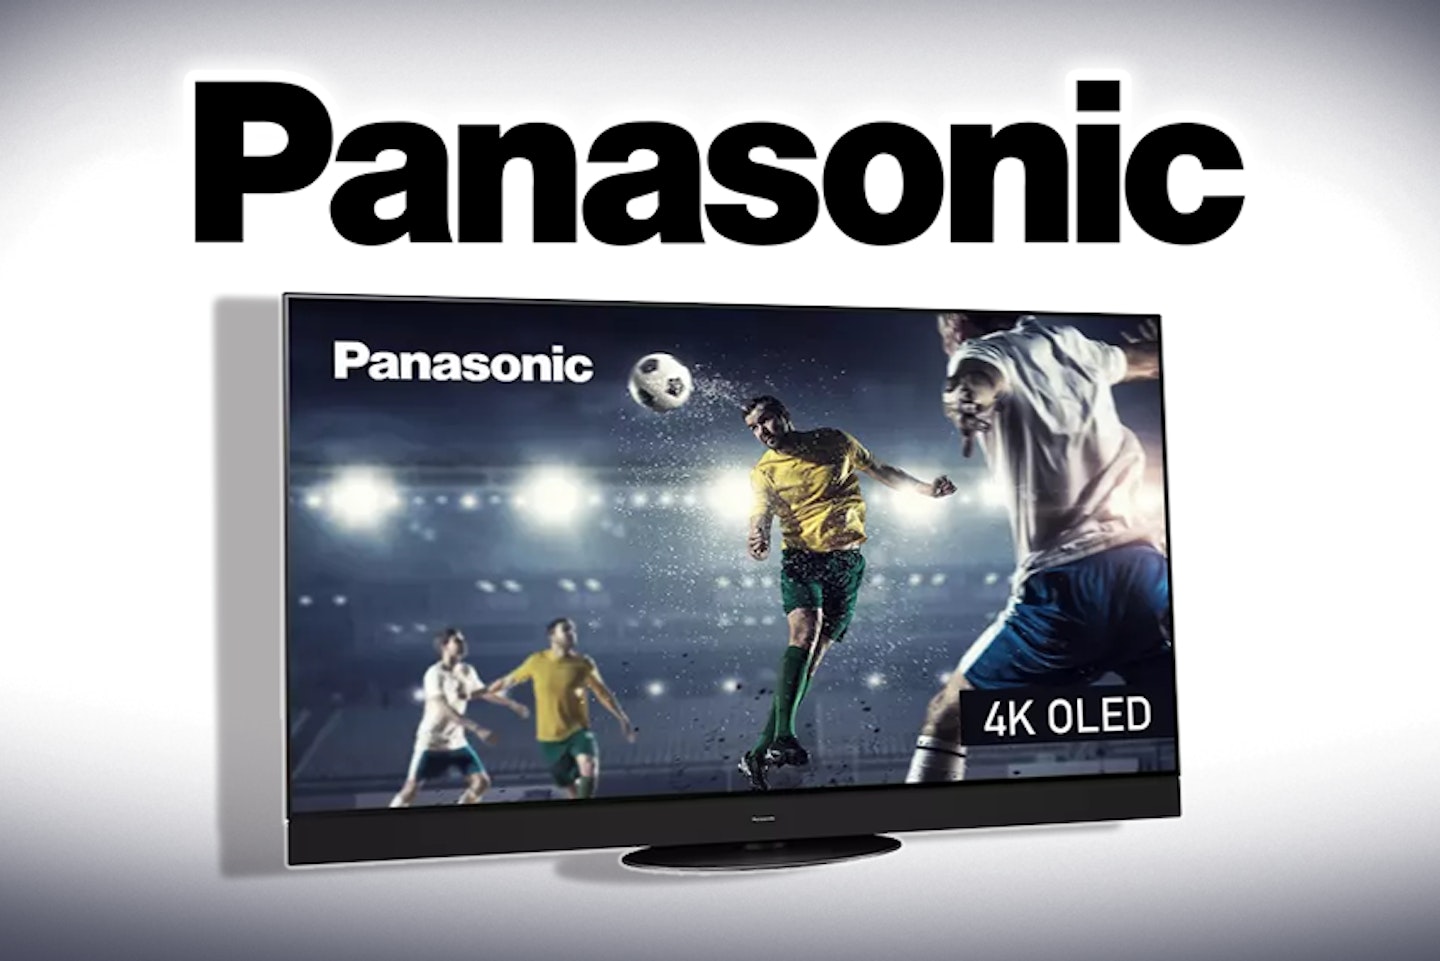 Panasonic TV brand